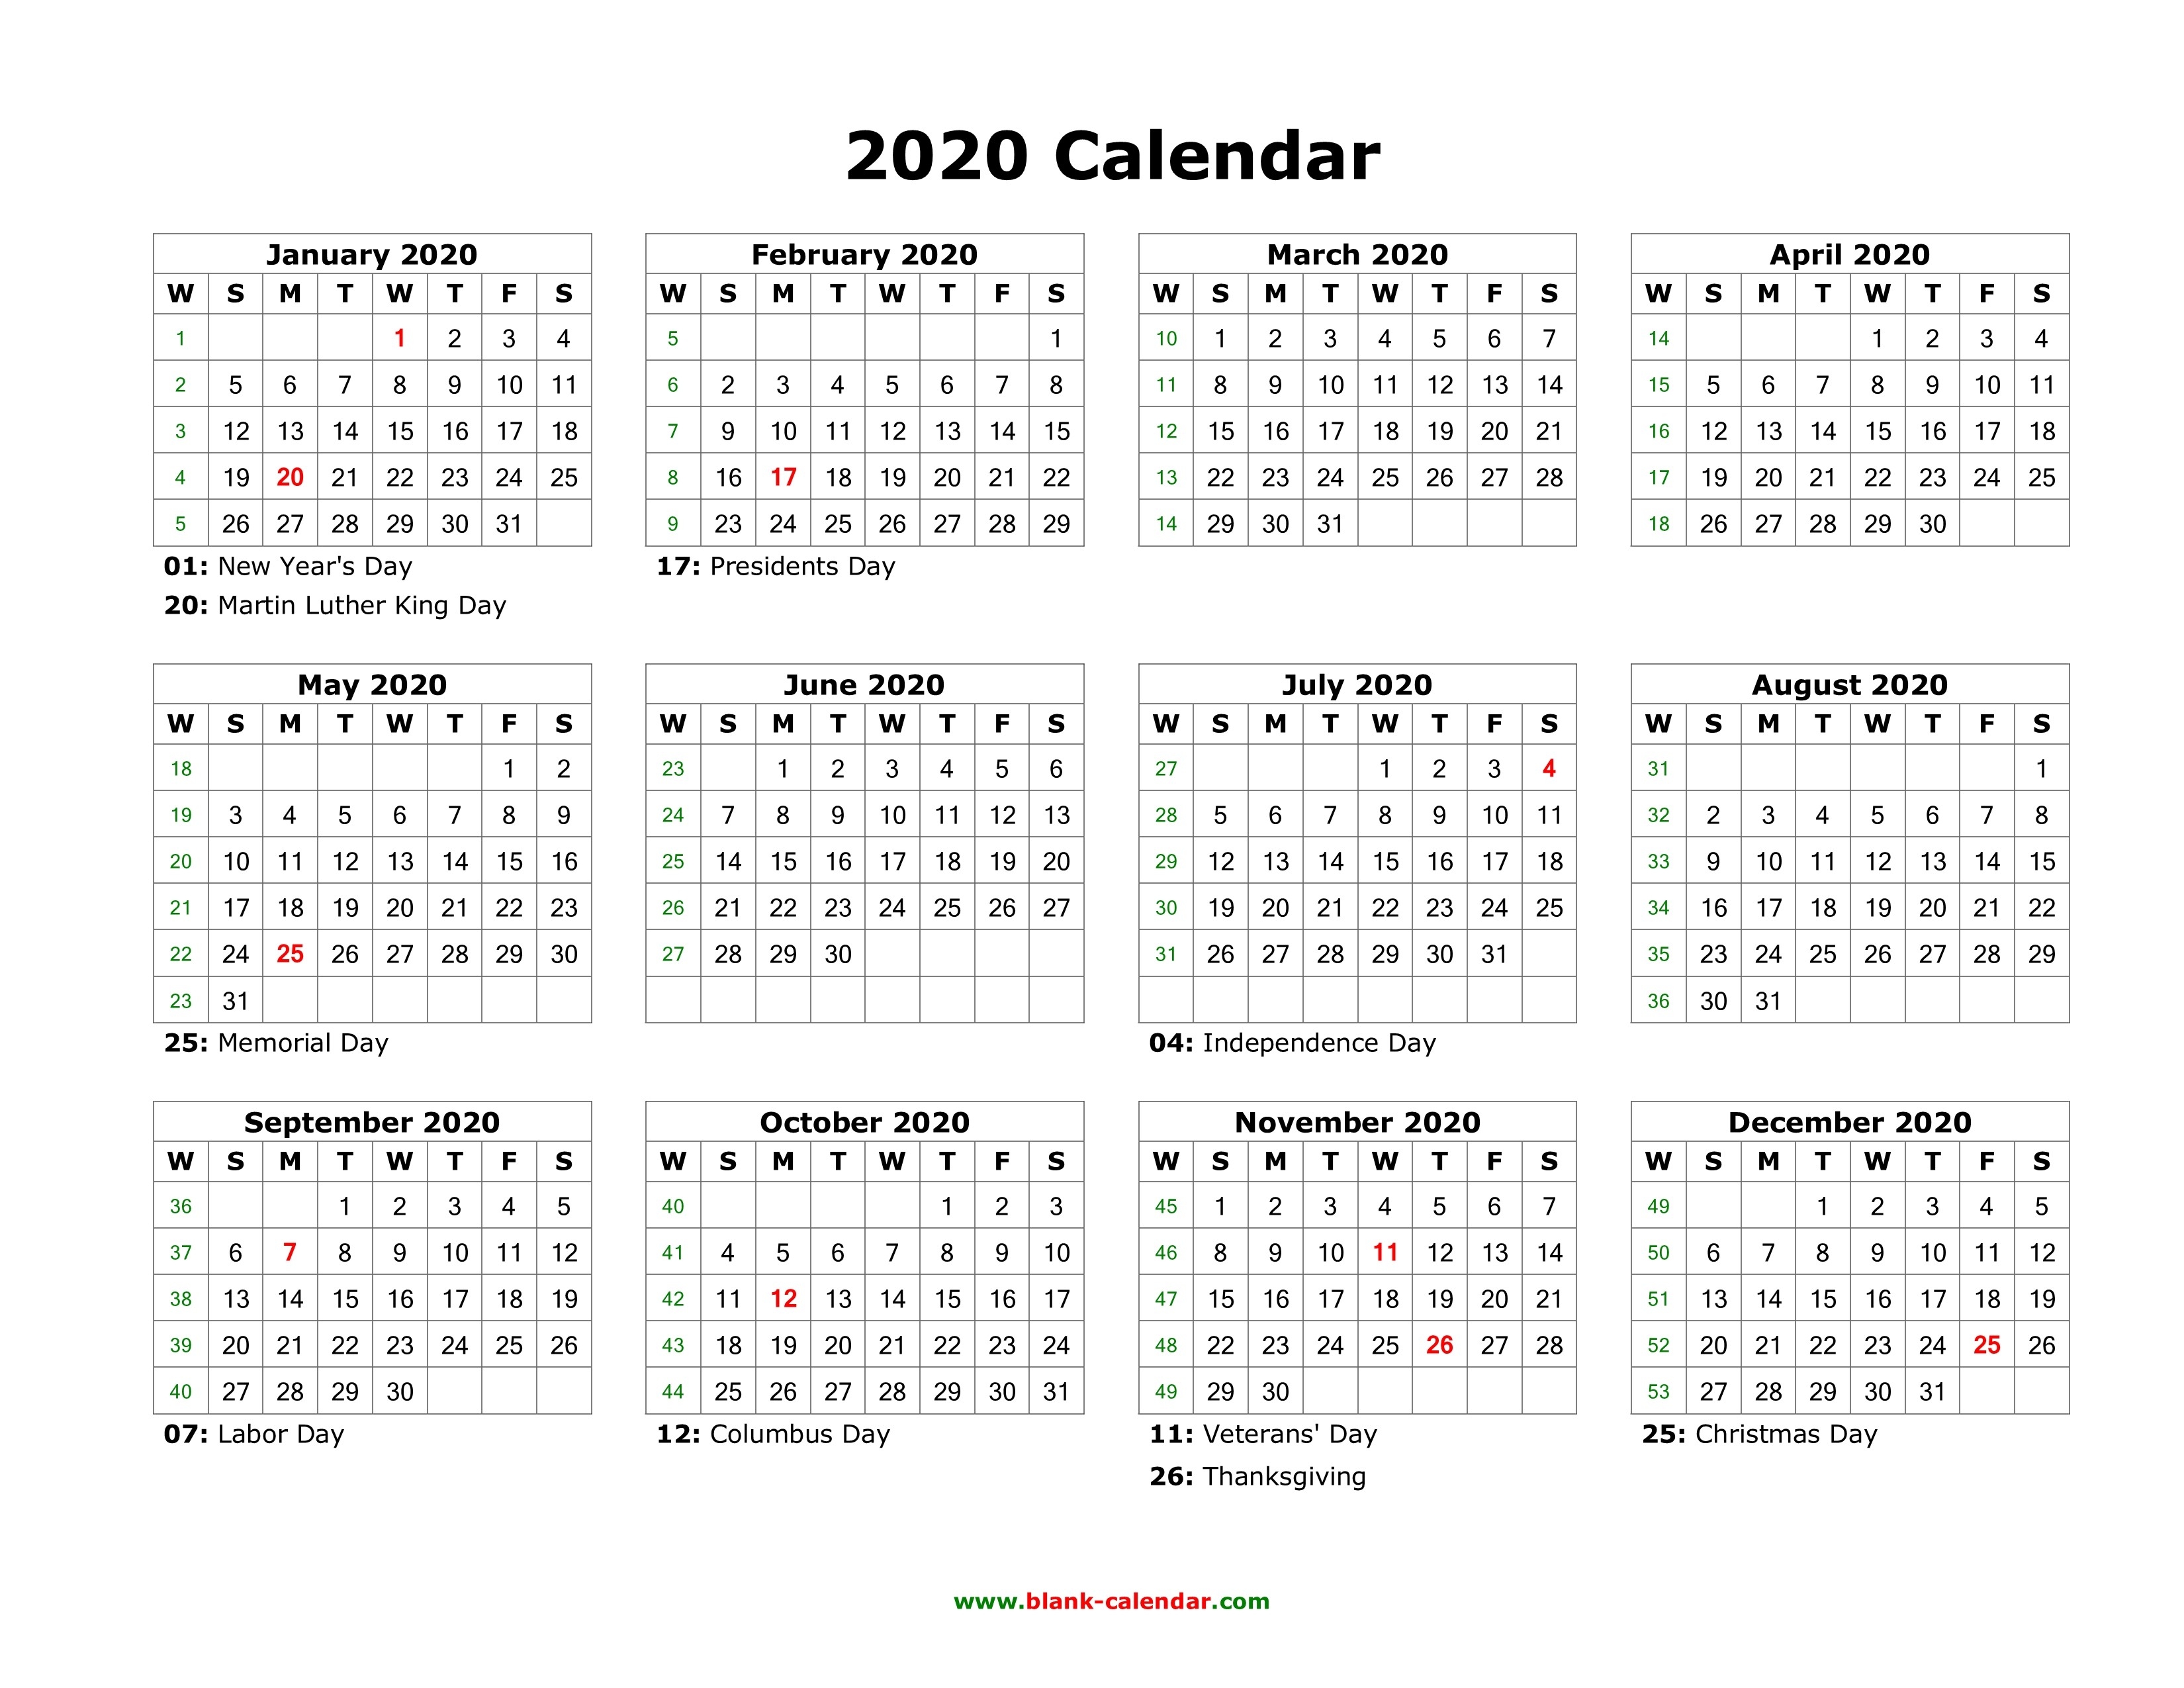 Blank Calendar 2020 | Free Download Calendar Templates-2020 Calendar 4 Month Template